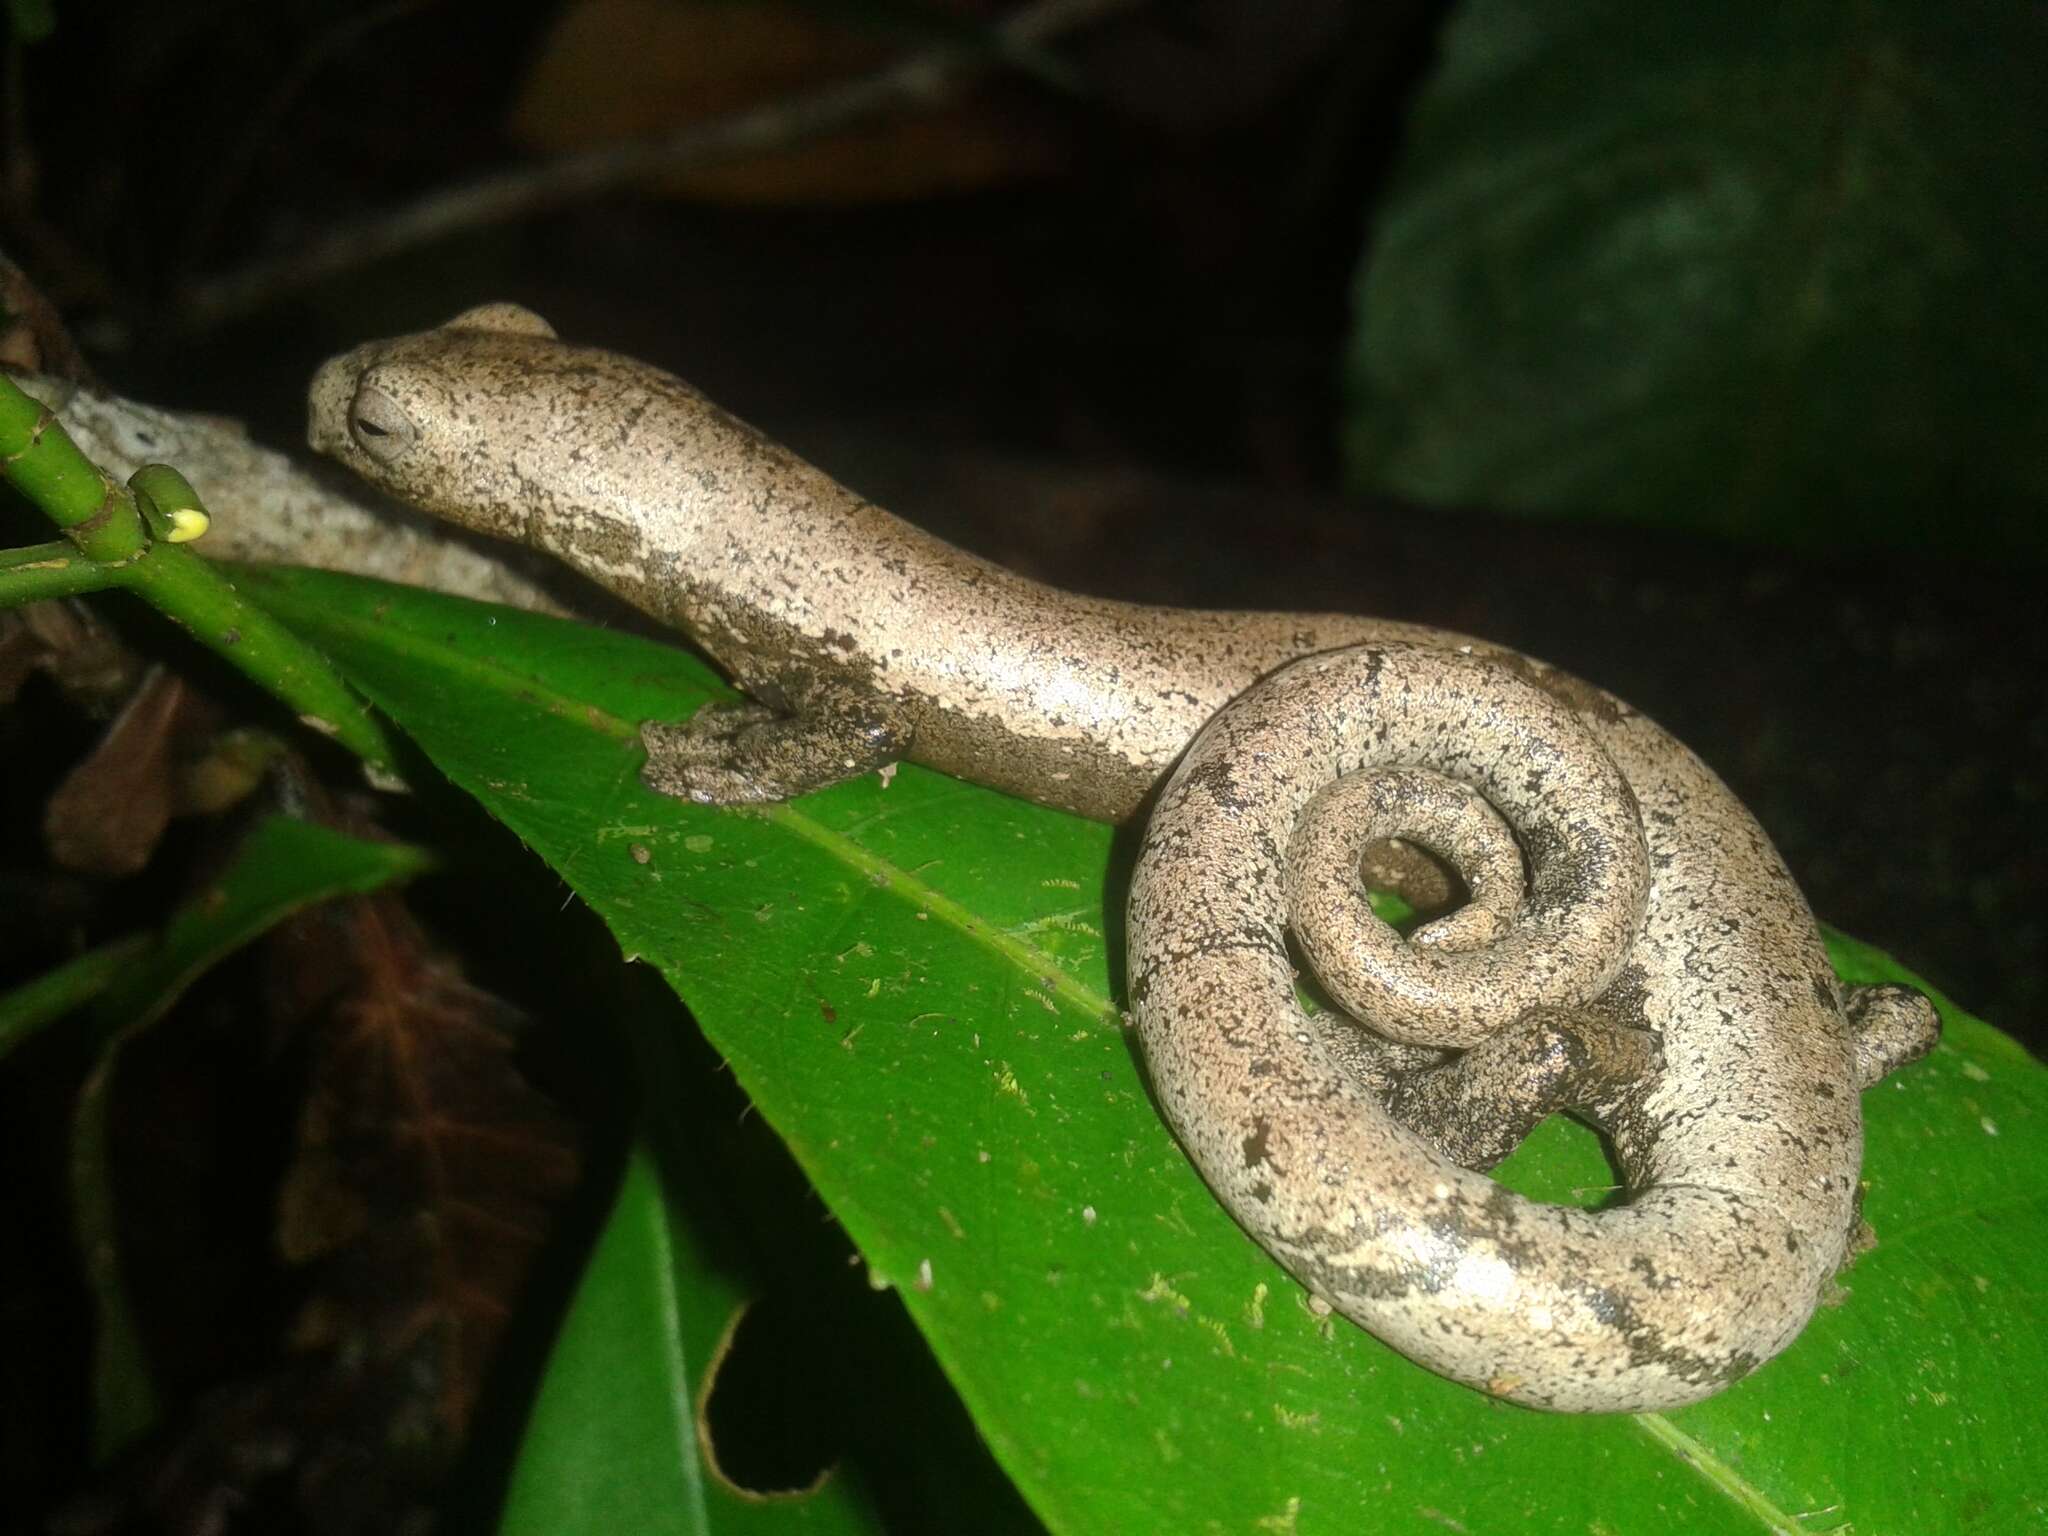 Image of Camron Mushroom-tongue Salamander